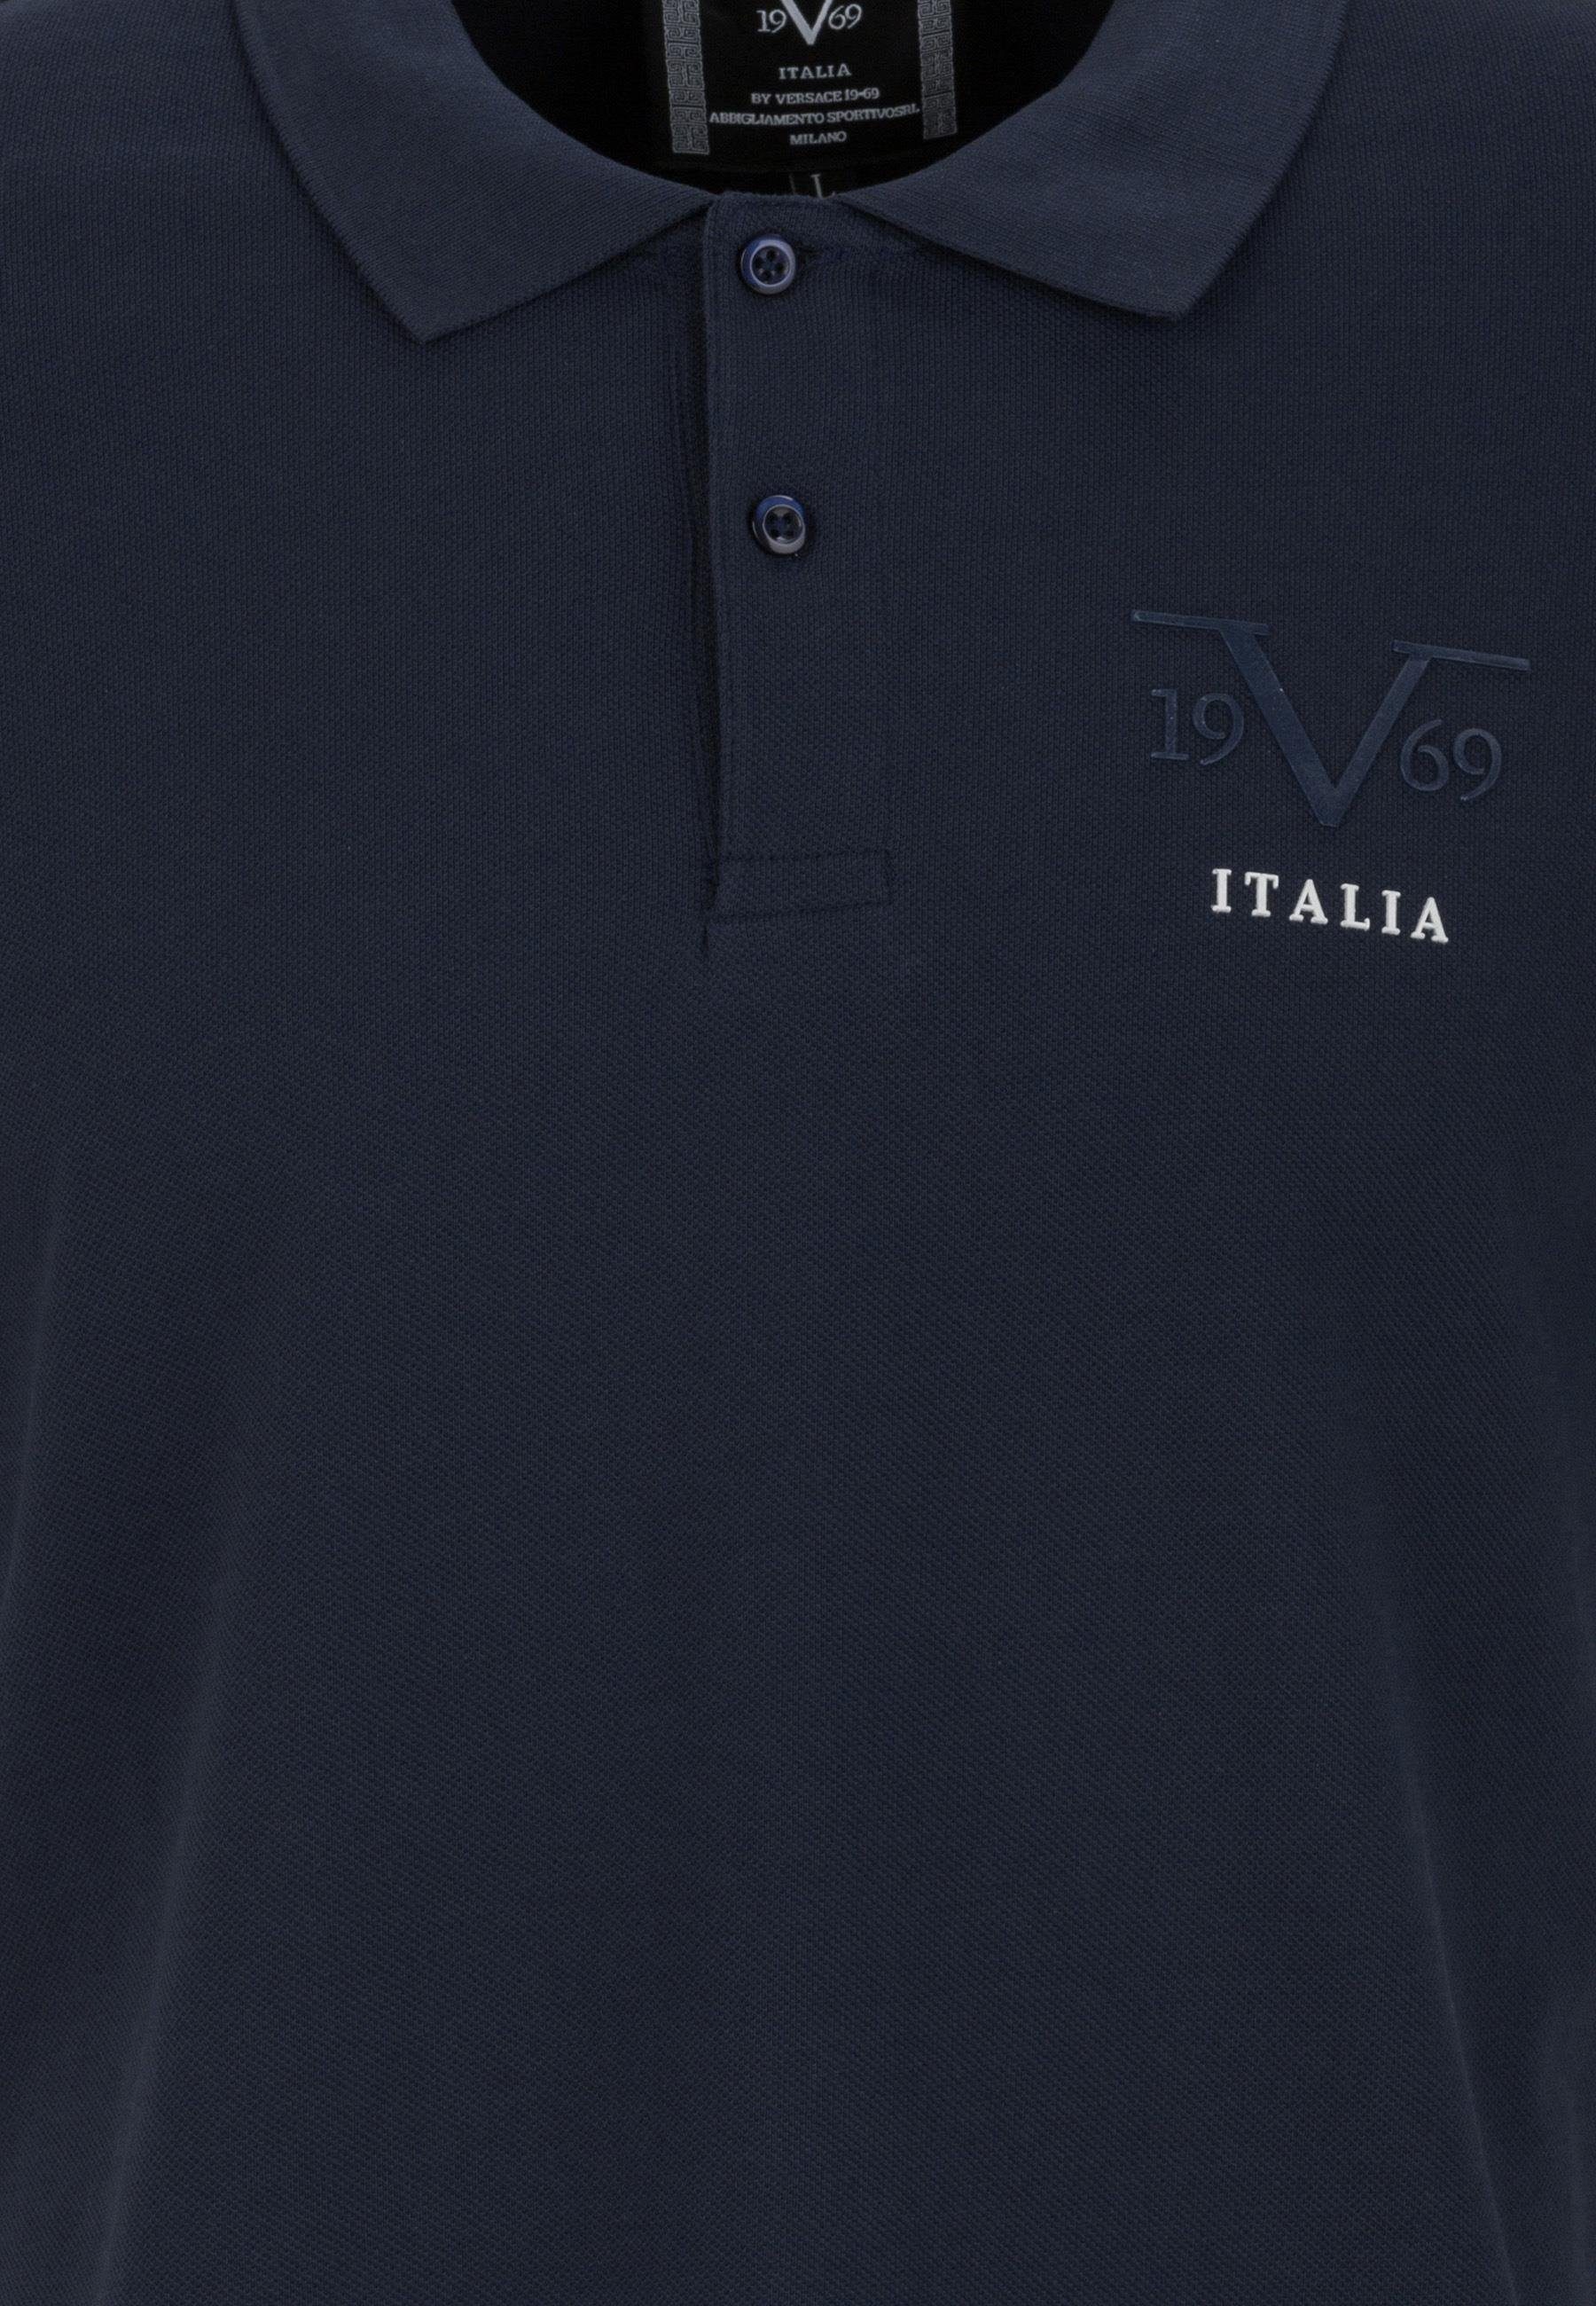 Harry Shirt Polo Versace blau T-Shirt 19V69 by Italia